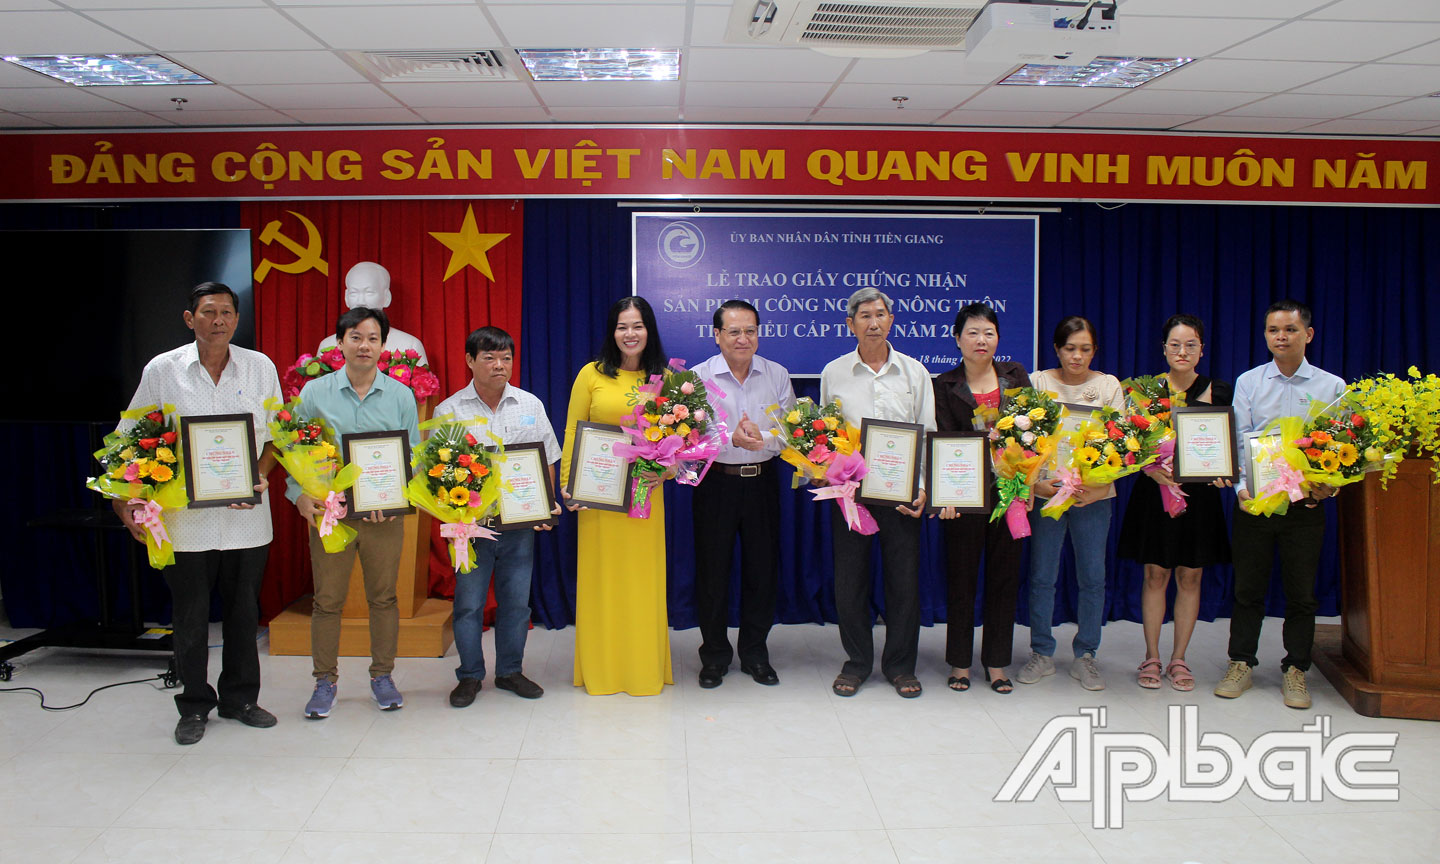 Đồng chí Phạm Văn Trọng trao Giấy chứng nhận sản phẩm công nghiệp nông thôn tiêu biểu cấp tỉnh năm 2022 cho các cơ sở công nghiệp nông thôn.